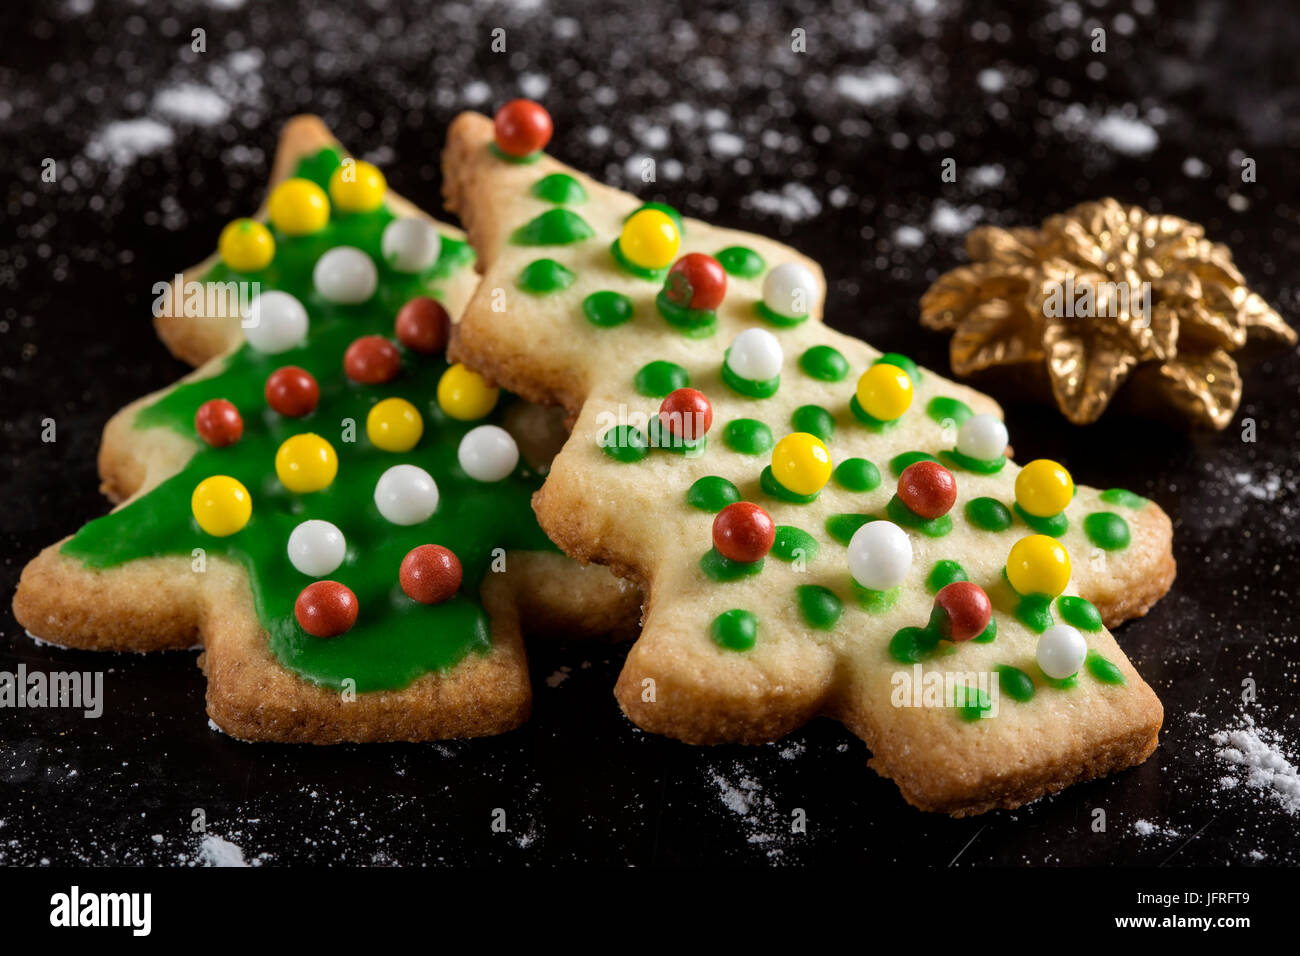 Les biscuits de Noël et d'épices en forme de sapin - Cuisine traditionnelle sur fond sombre avec du sucre en poudre Banque D'Images